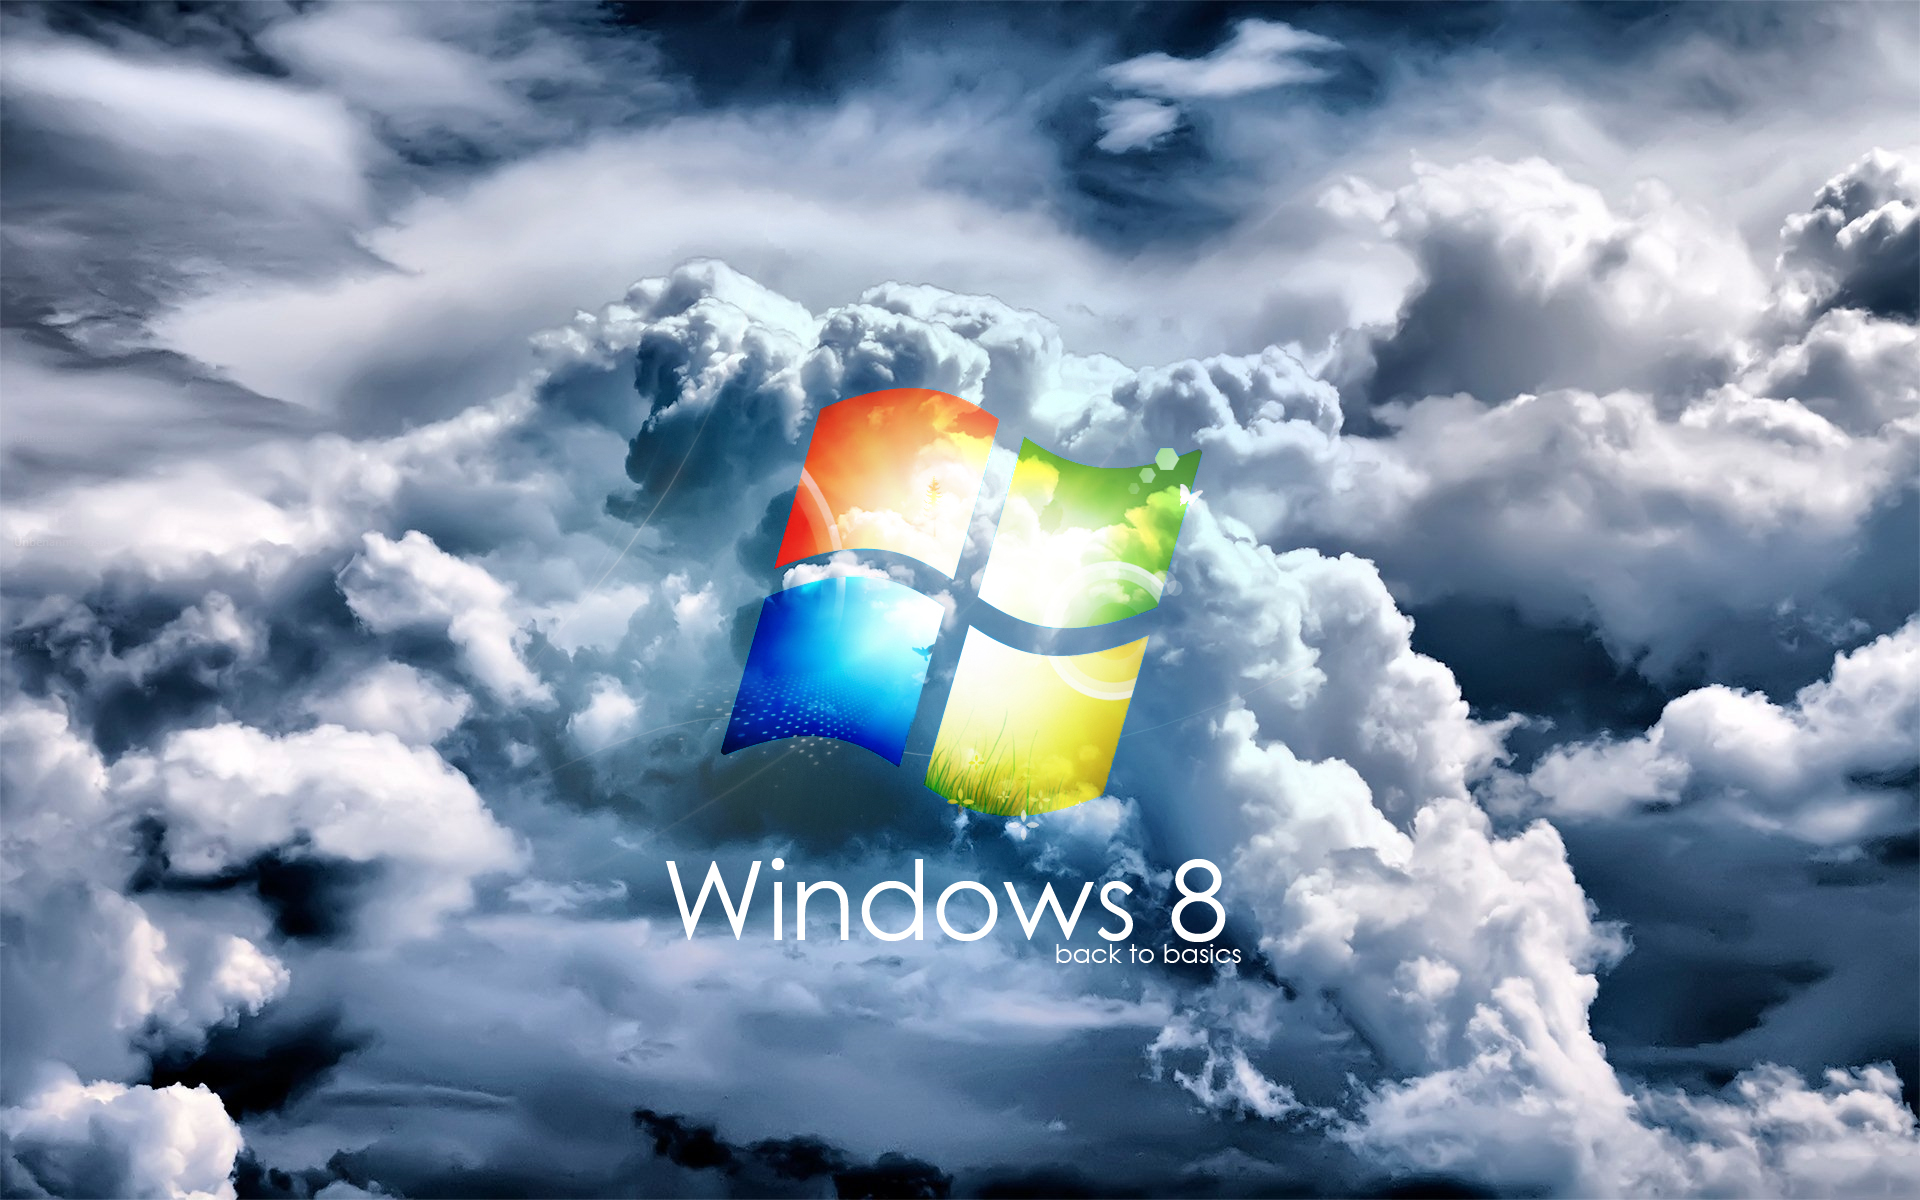 Video hình nền Windows 8 sẽ mang đến cho bạn cảm giác như mình đang đứng ngay giữa những cảnh đẹp nhất của thế giới. Đừng bỏ lỡ cơ hội để trang trí cho máy tính của bạn với những video hình nền tuyệt đẹp này.